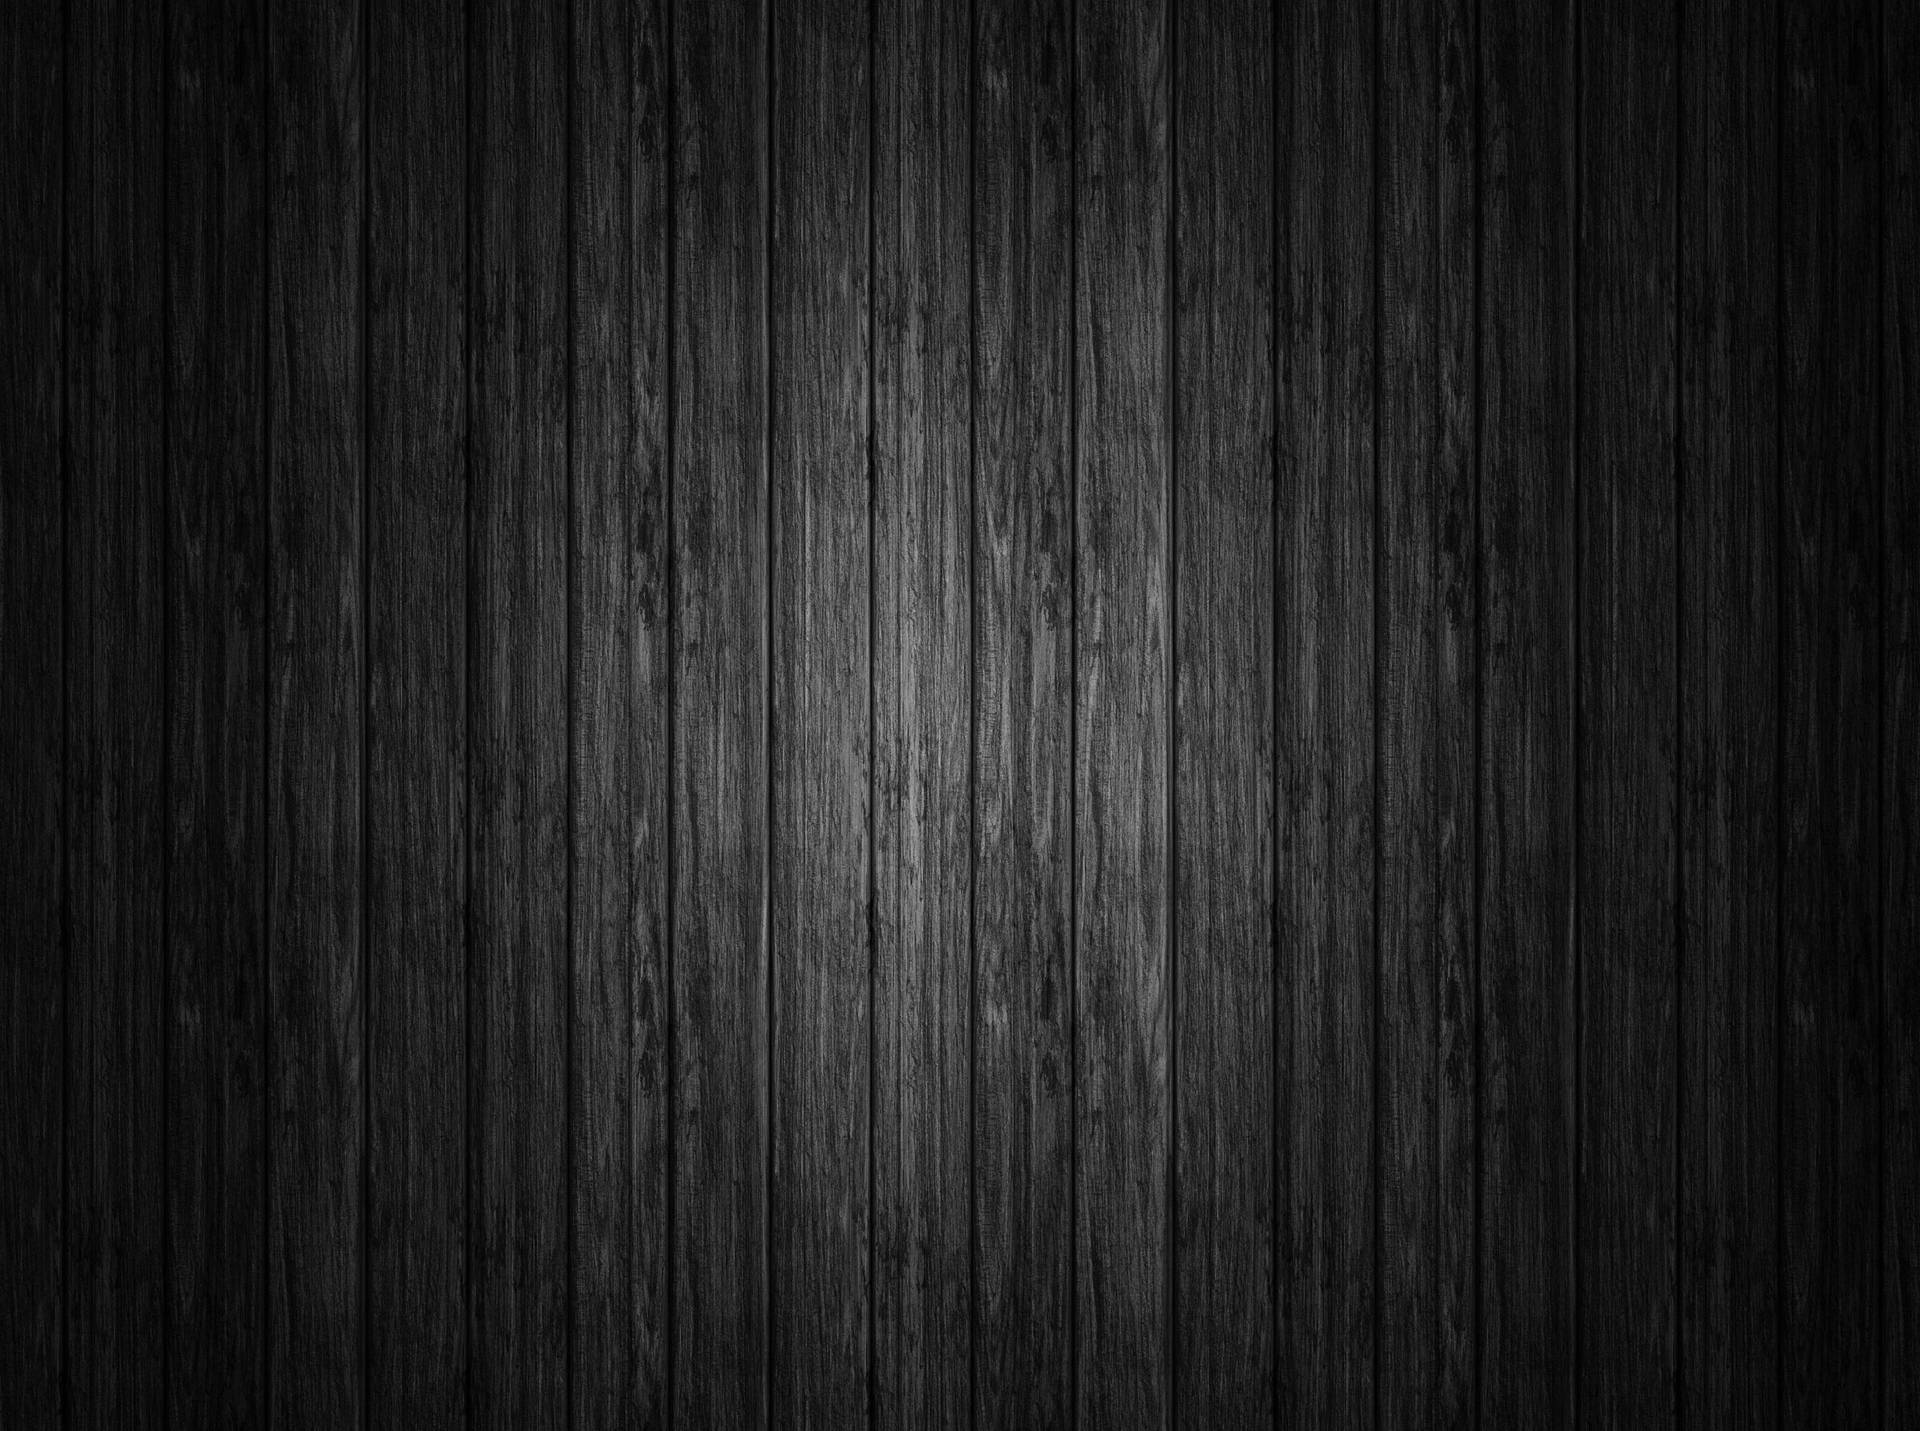 Solid Black 4k Black Wooden Panels Background